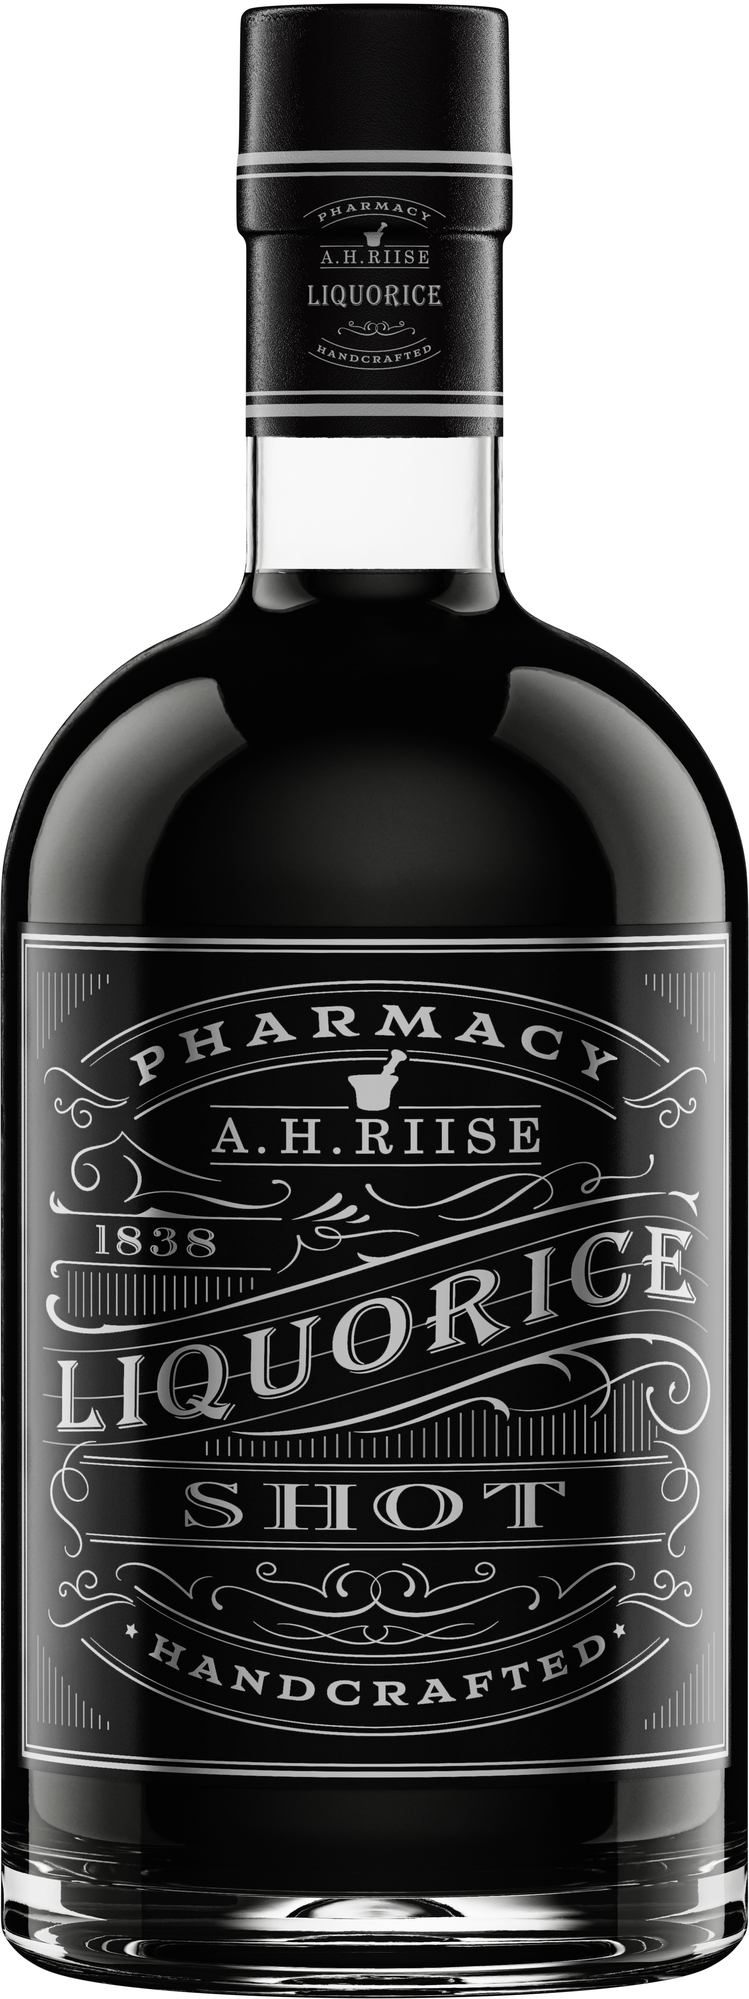 A.H. Riise Pharmacy Liquorice Shot 18% 0,7l (čistá fľaša)